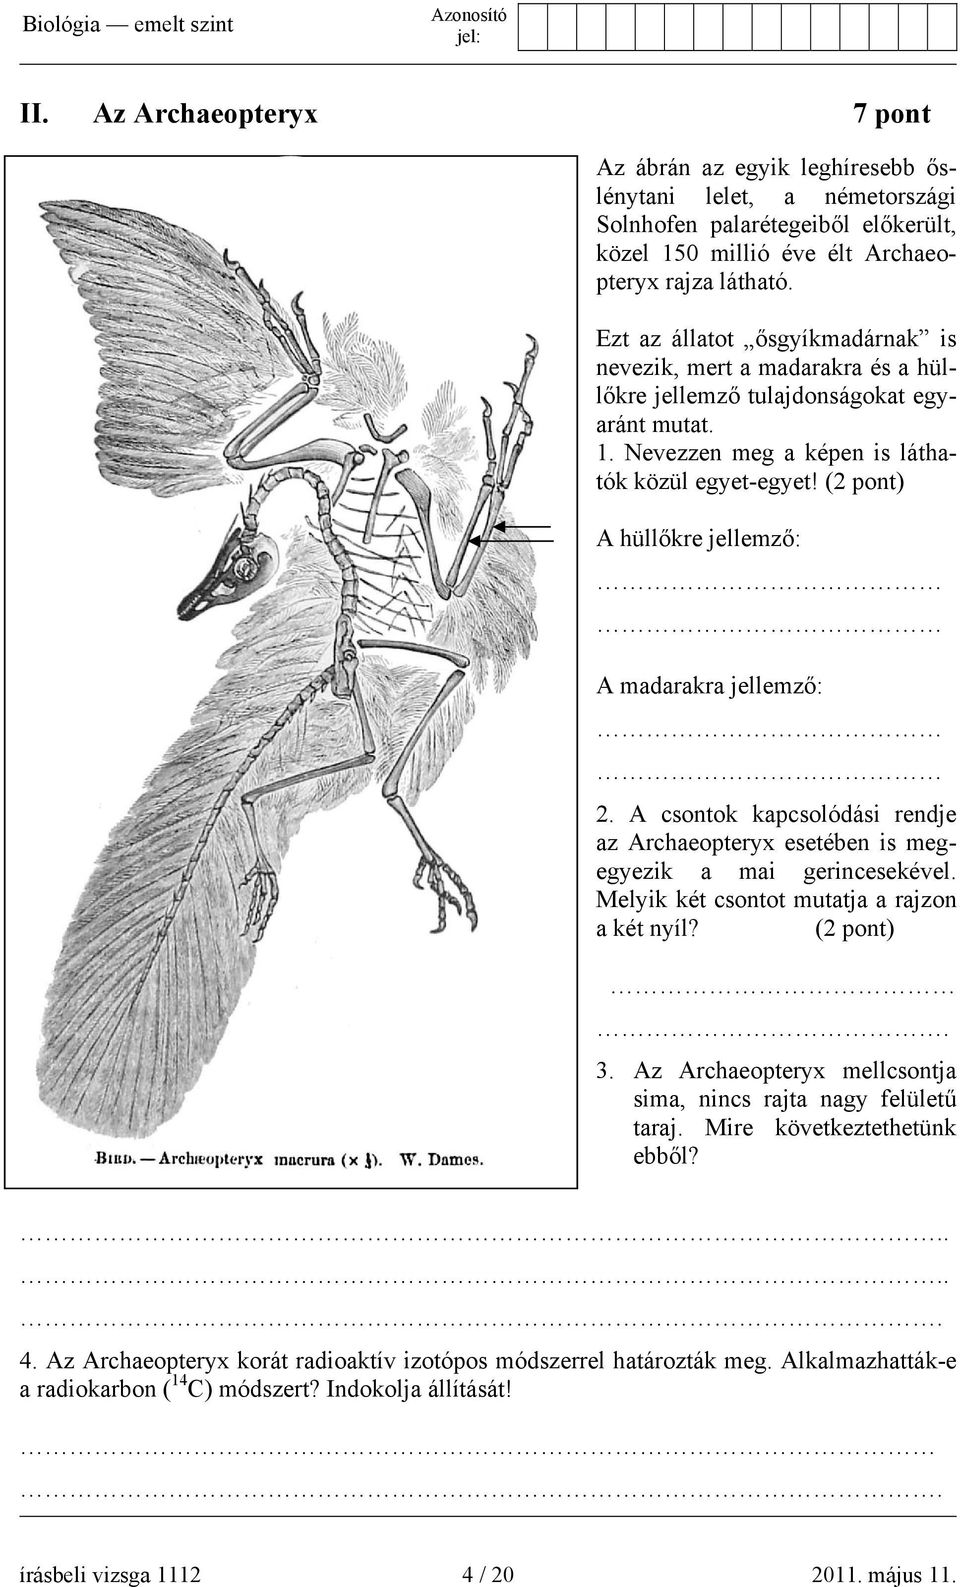 (2 pont) A hüllőkre jellemző: A madarakra jellemző: 2. A csontok kapcsolódási rendje az Archaeopteryx esetében is megegyezik a mai gerincesekével. Melyik két csontot mutatja a rajzon a két nyíl?